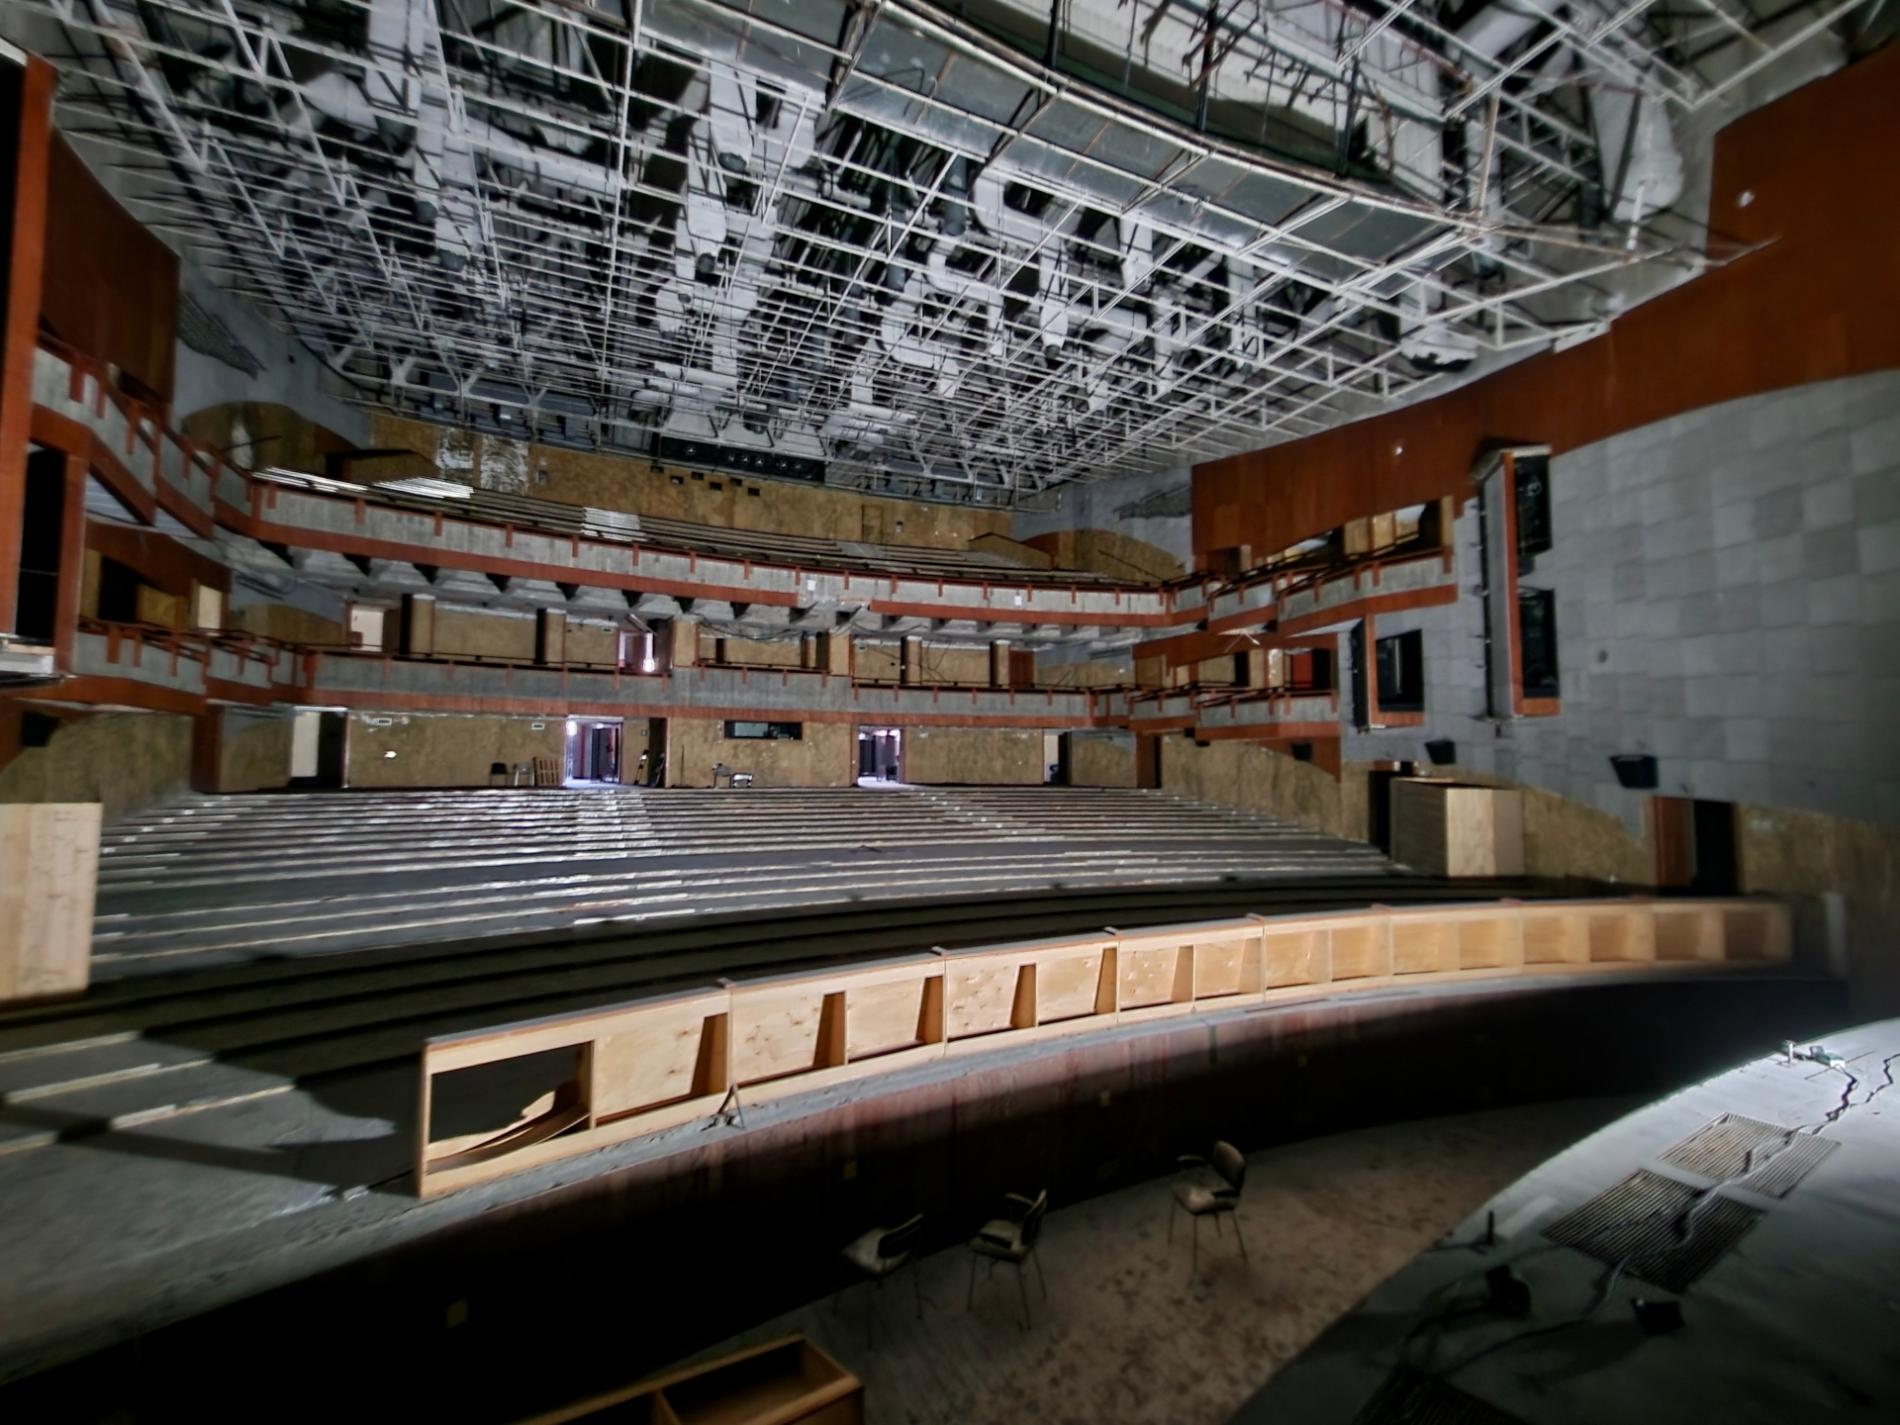 Teatro Comunale, Serra: “Entro fine anno l’avvio dei lavori”